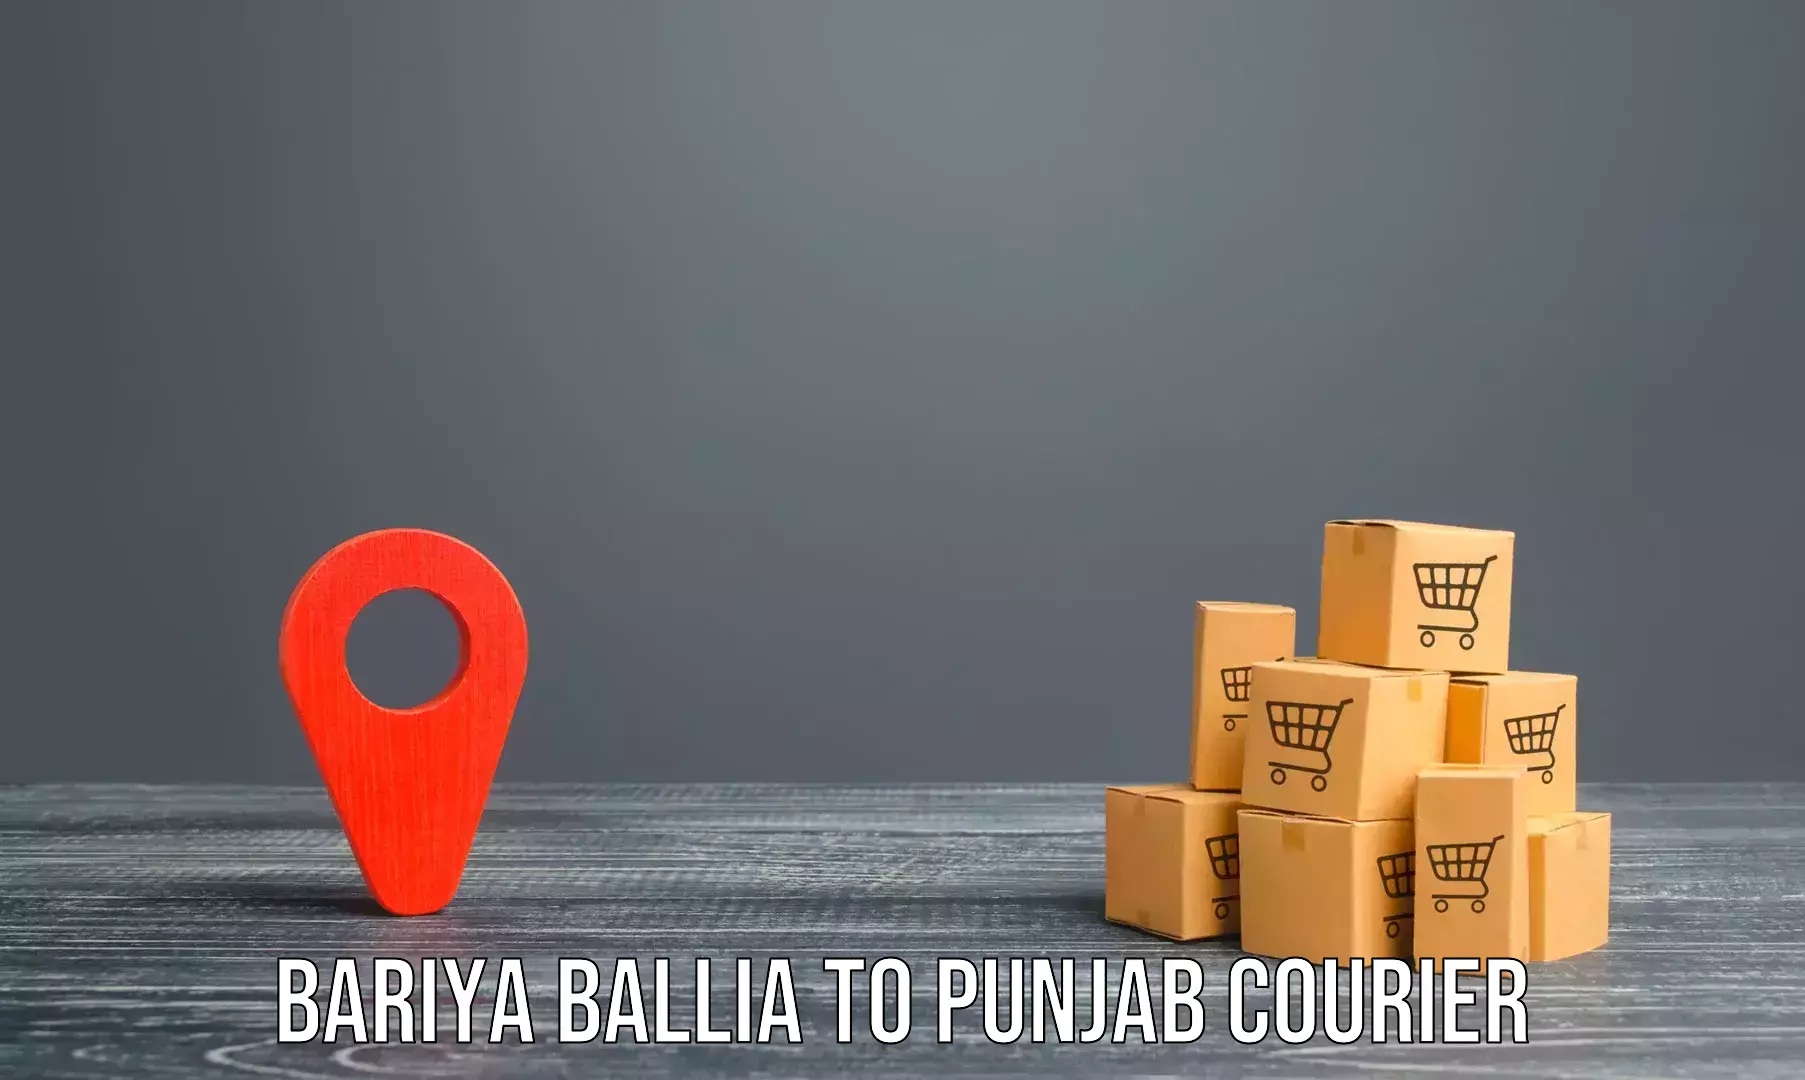 Furniture delivery service Bariya Ballia to Dinanagar